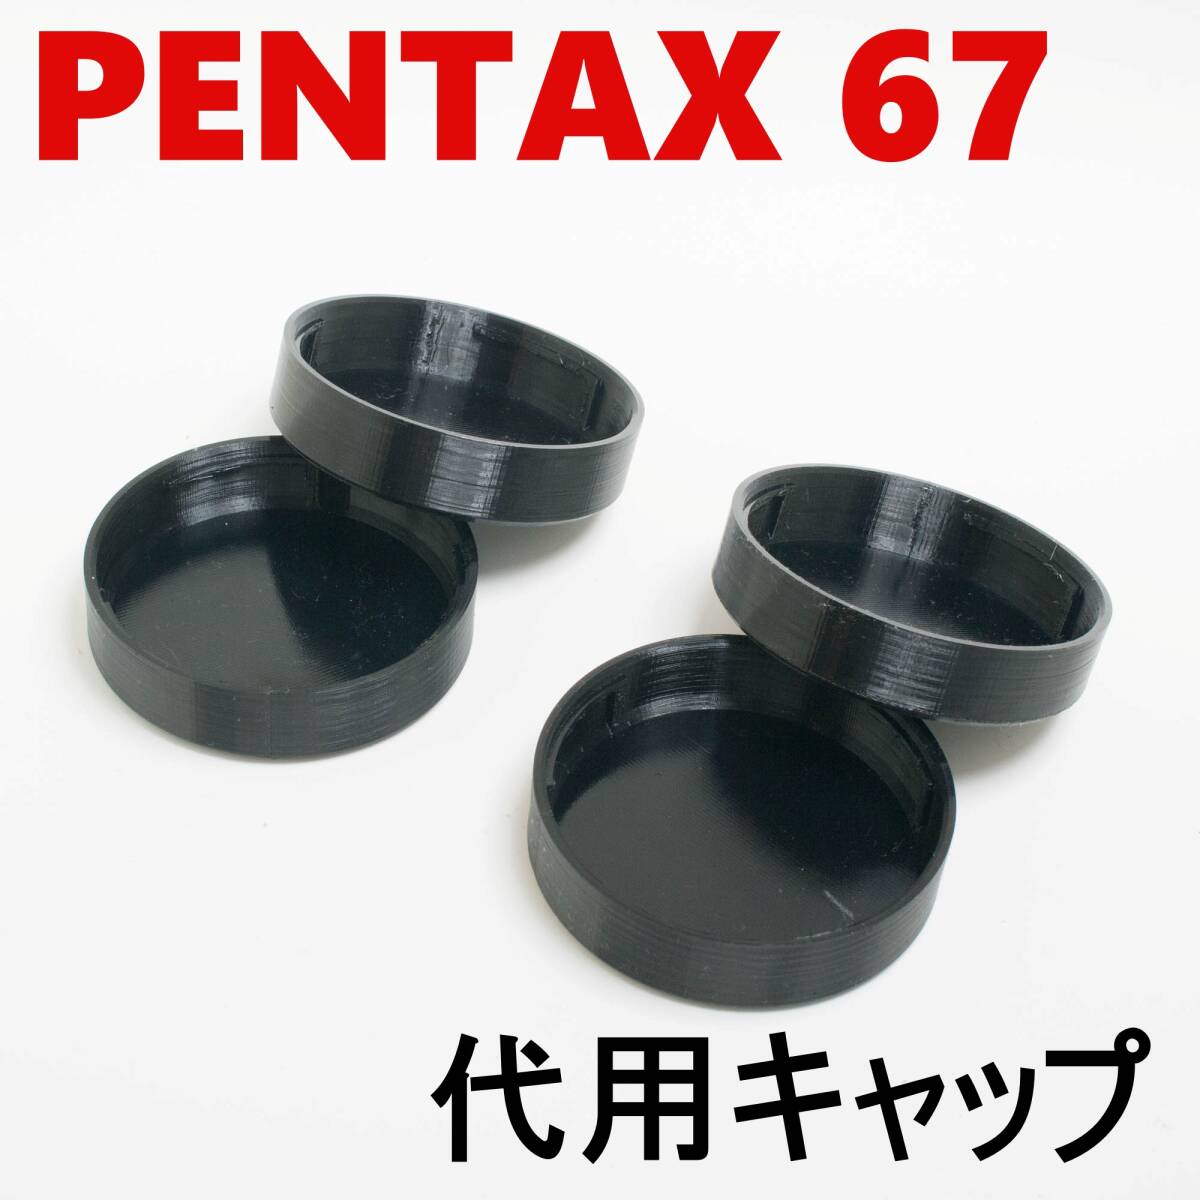 ペンタックス67 6x7 代用レンズリアキャップ 4個 セット